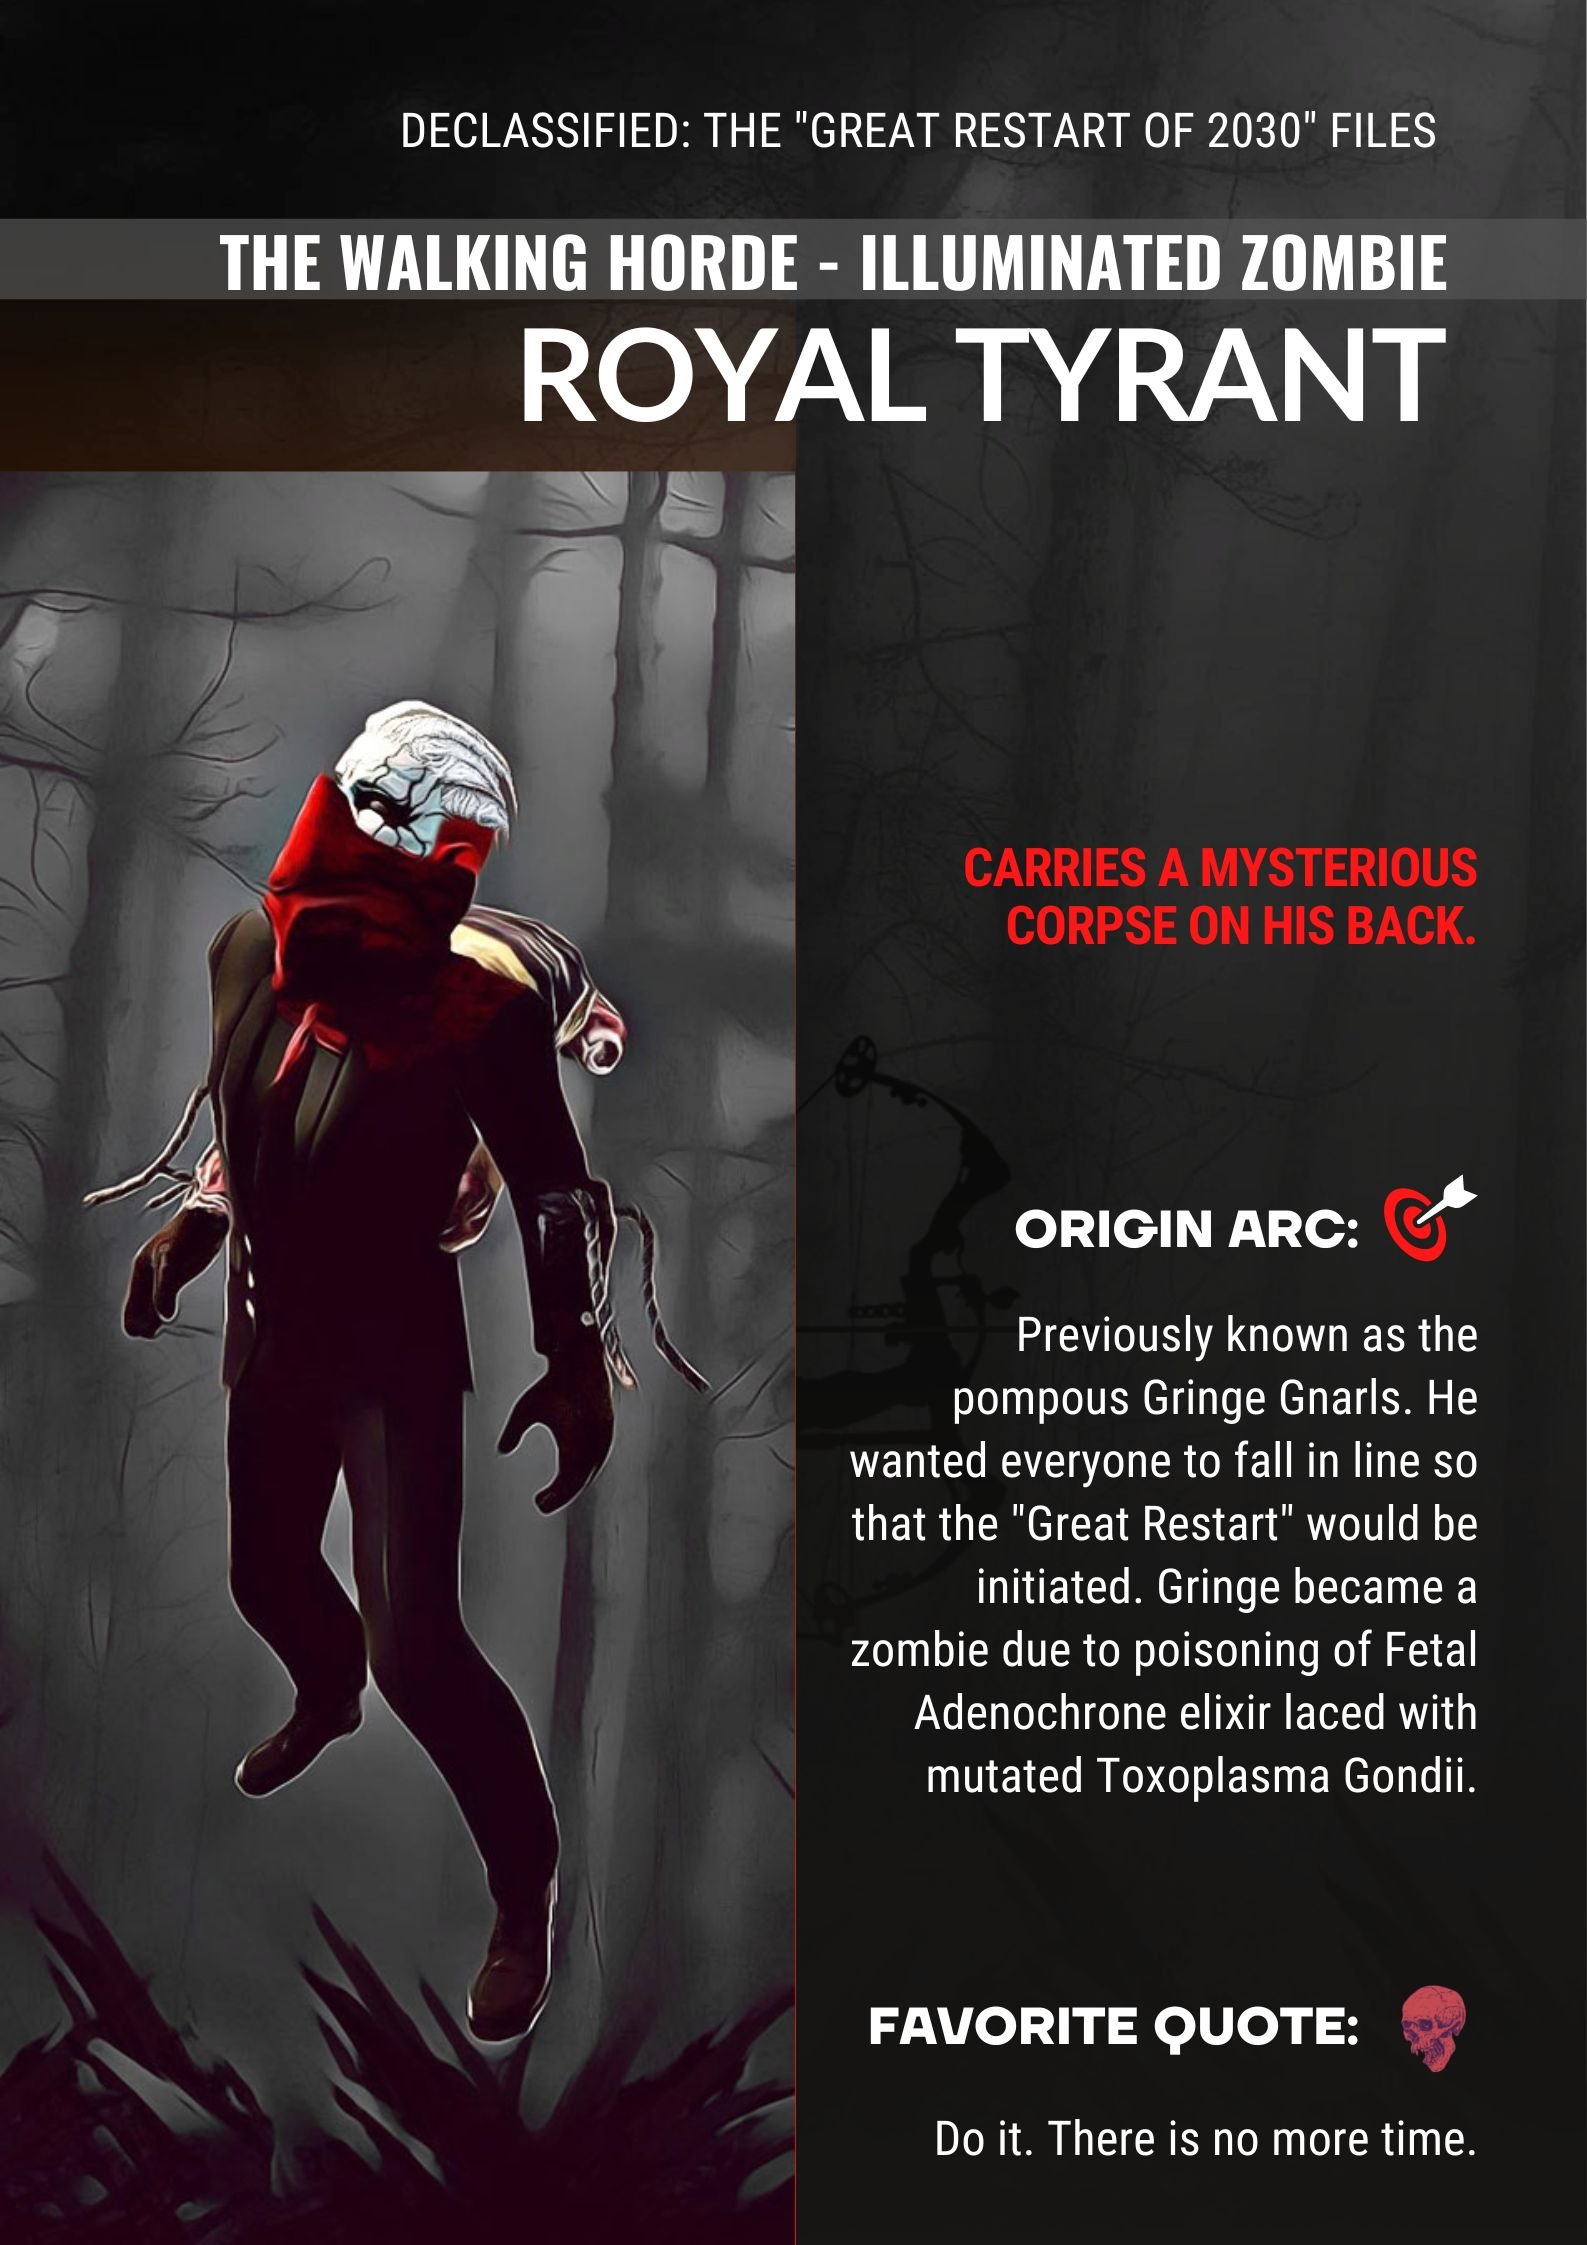 Royal Tyrant